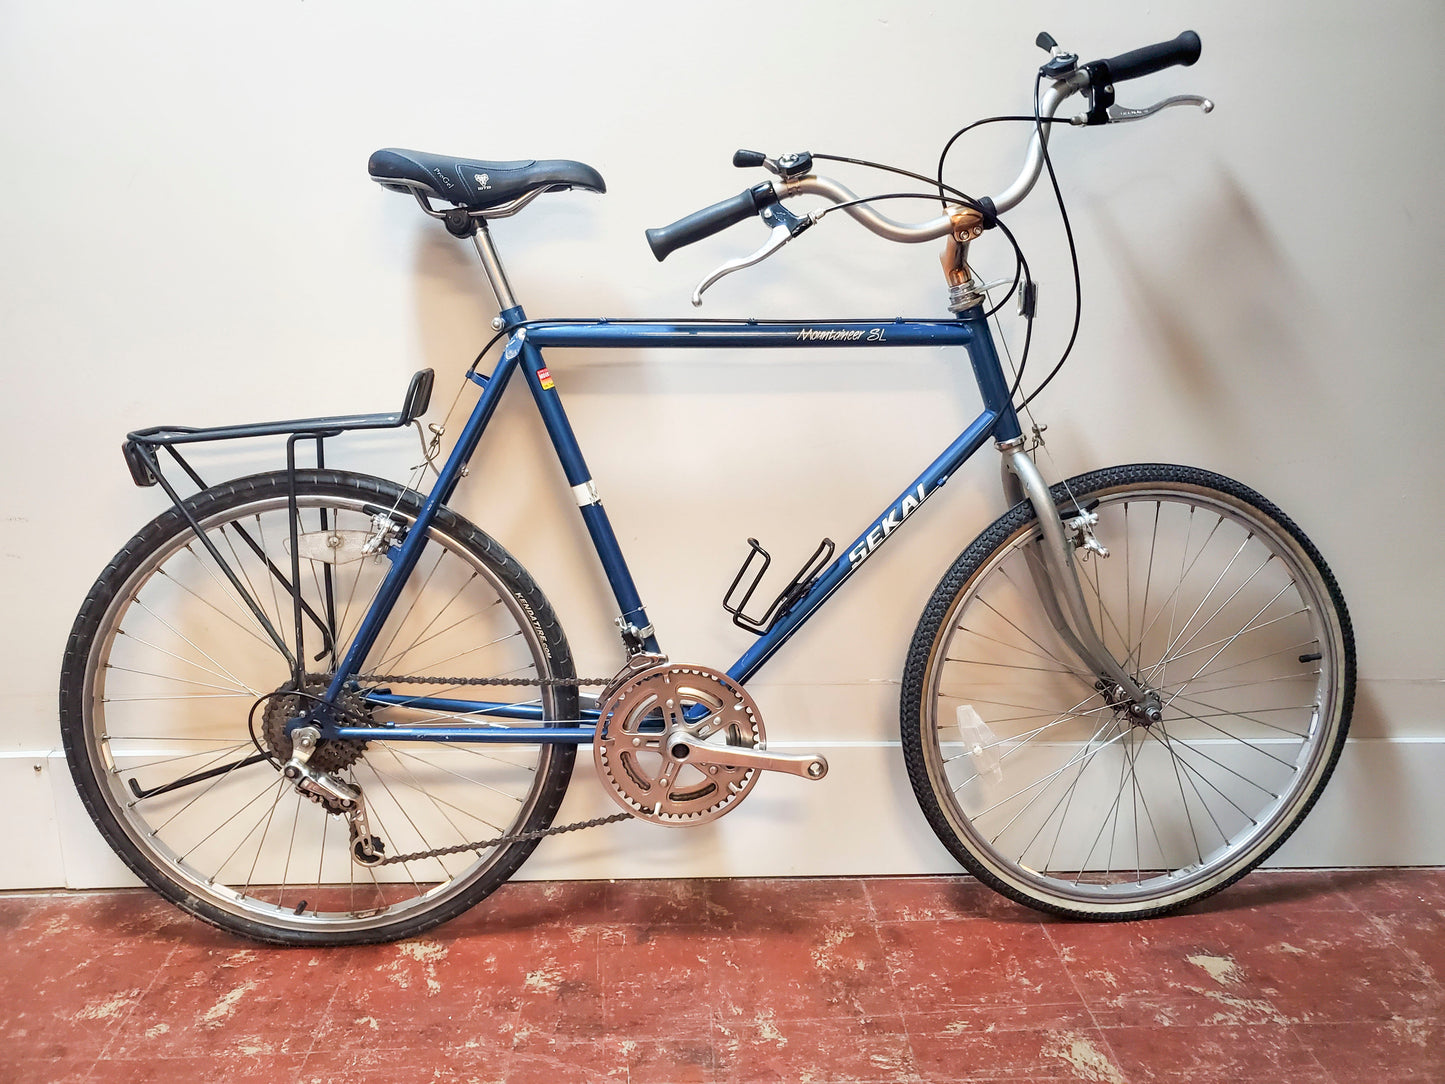 Sekai Mountaineer SL, Vintage Mountain Bike, 58 cm, blue